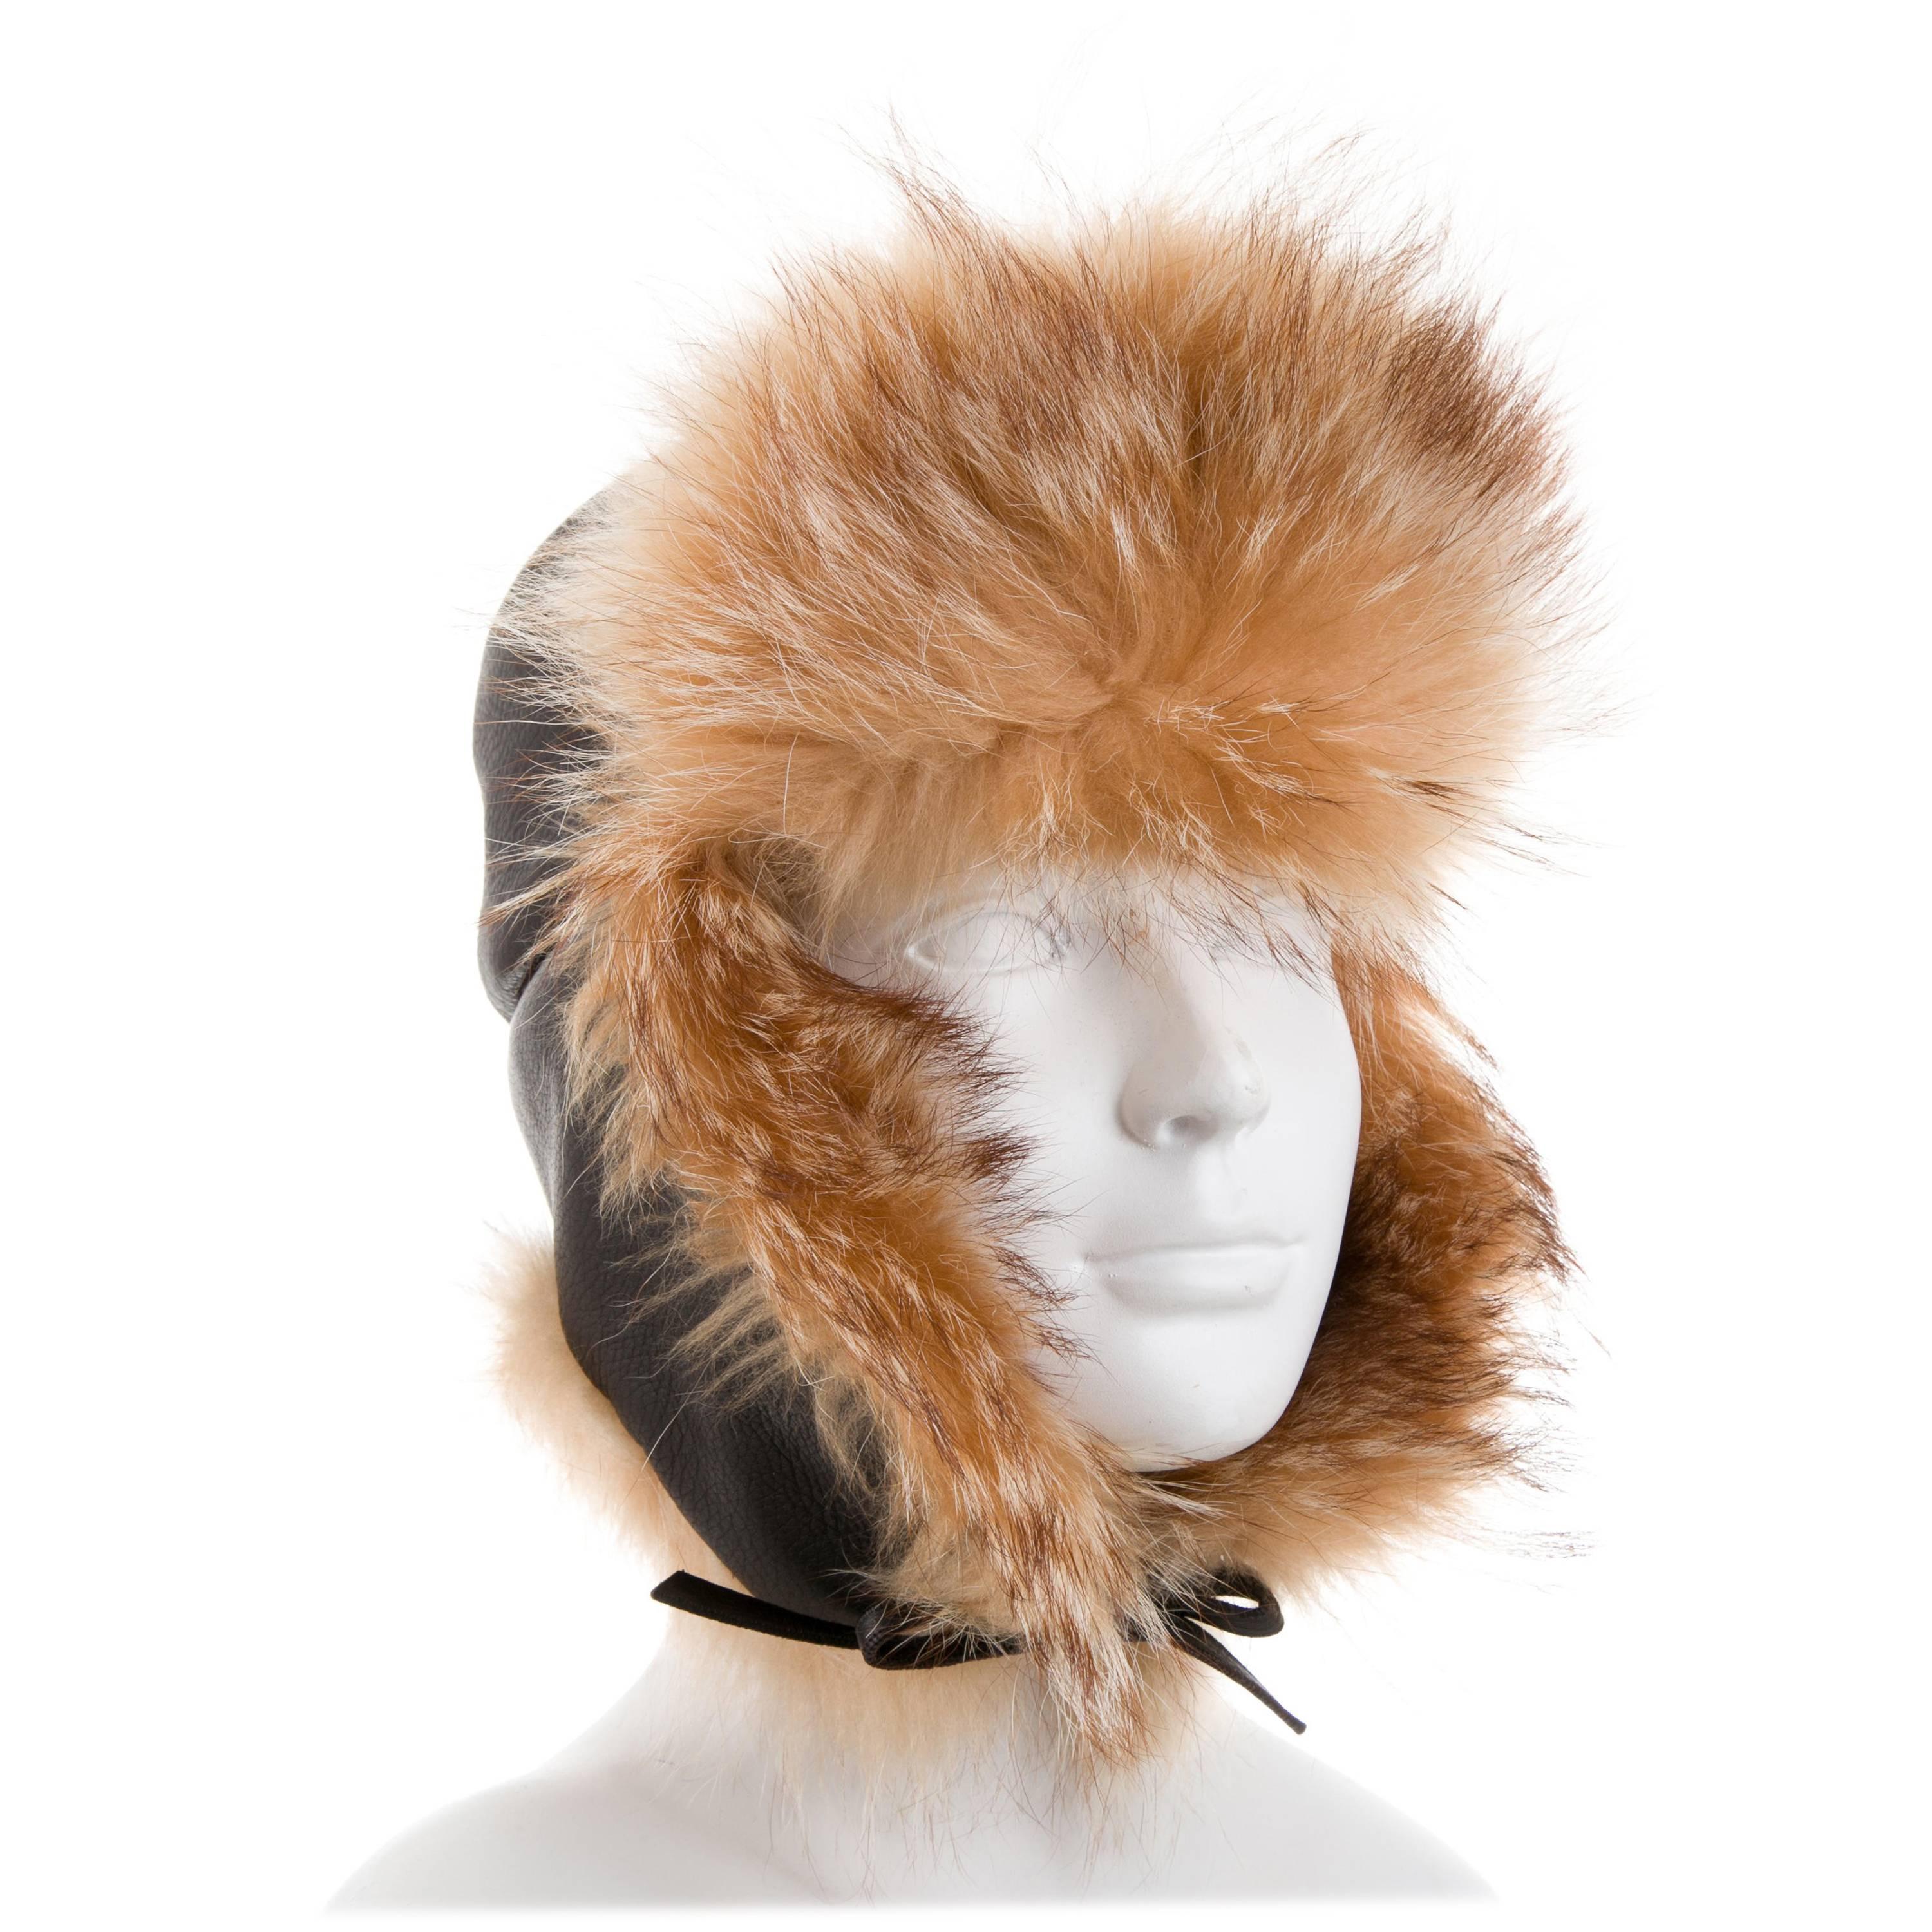 Hermes New Leather Cognac Fur Russian Style Men's Women's Winter Flap Hat in Box